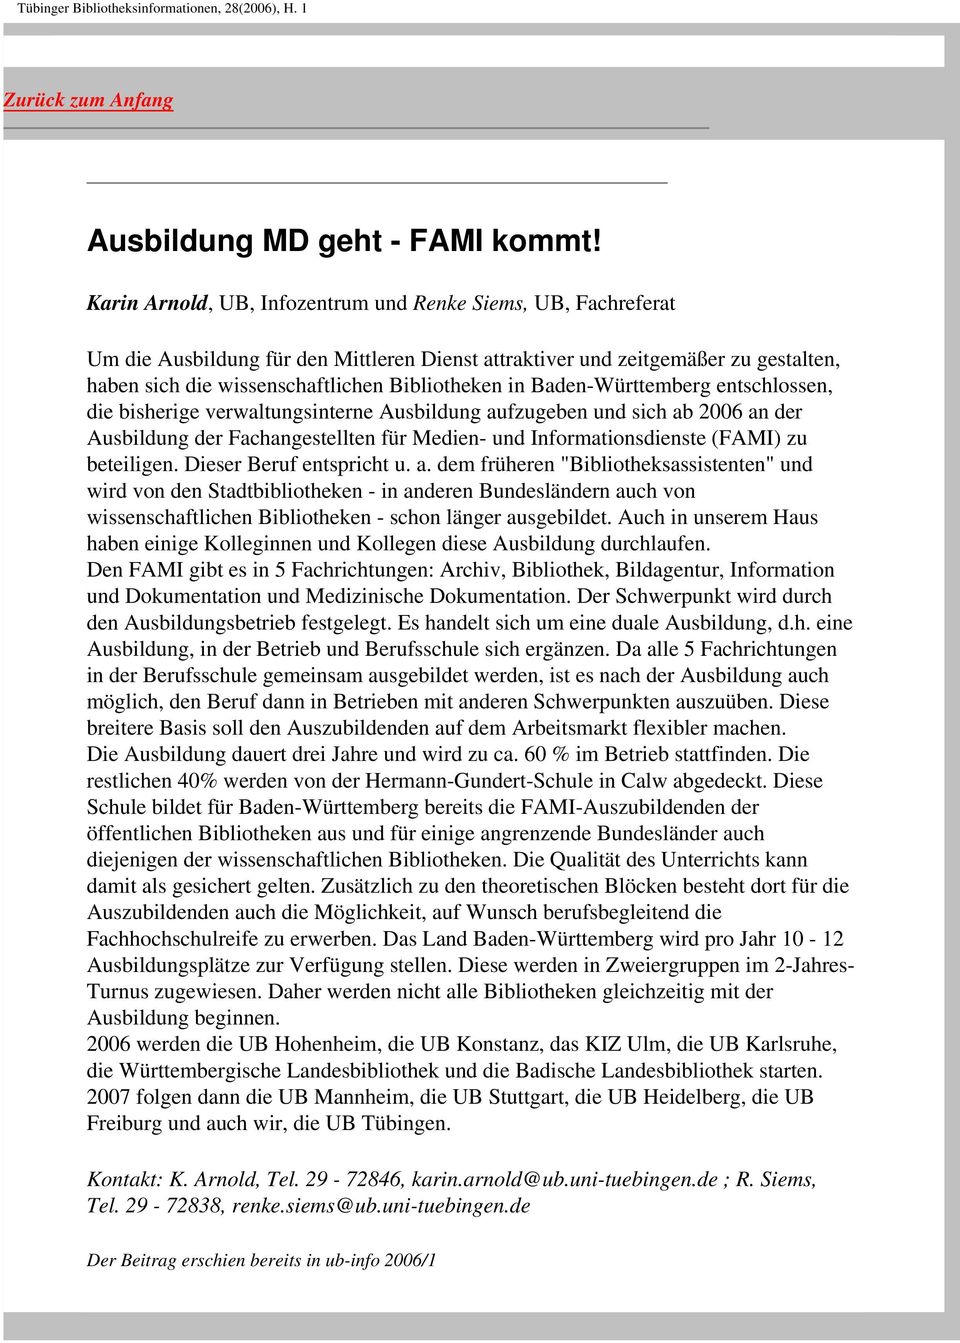 Baden-Württemberg entschlossen, die bisherige verwaltungsinterne Ausbildung aufzugeben und sich ab 2006 an der Ausbildung der Fachangestellten für Medien- und Informationsdienste (FAMI) zu beteiligen.